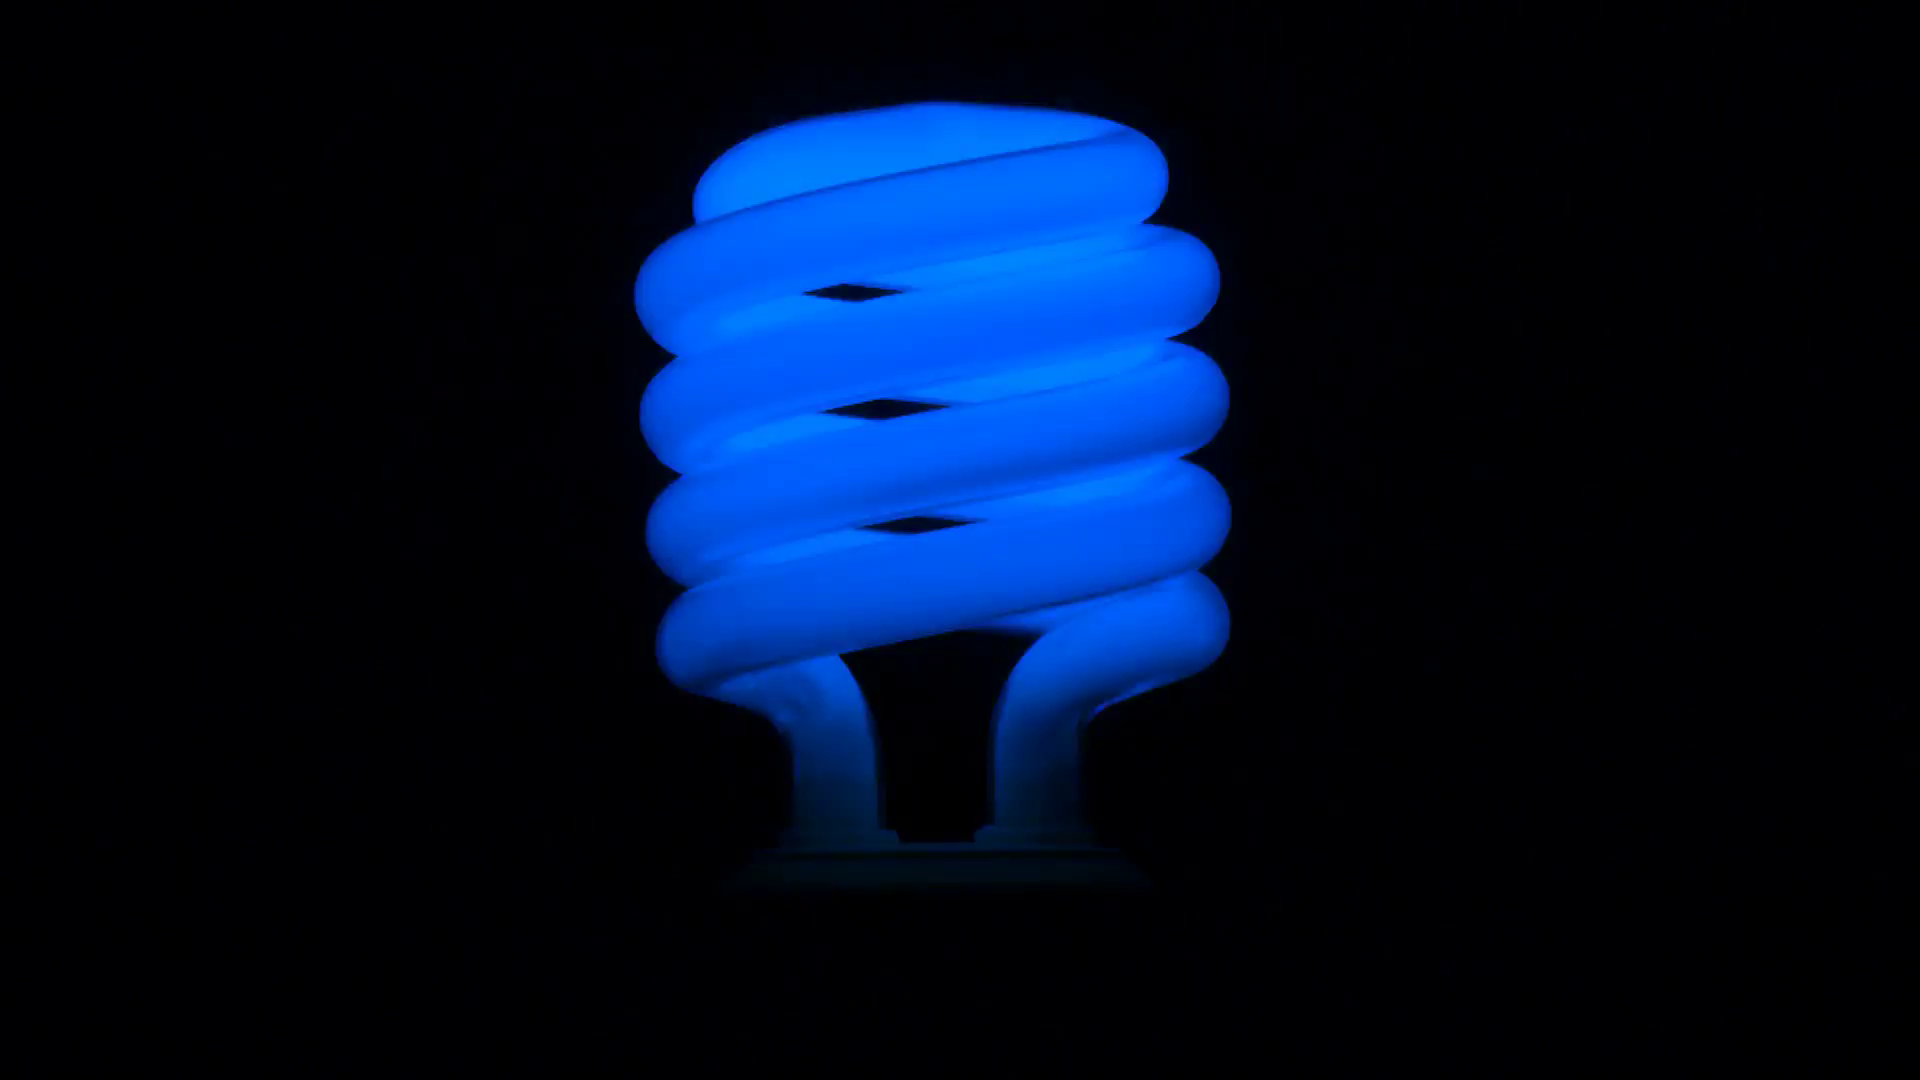 Flickering blue fluorescent light bulb in dark room against black ...